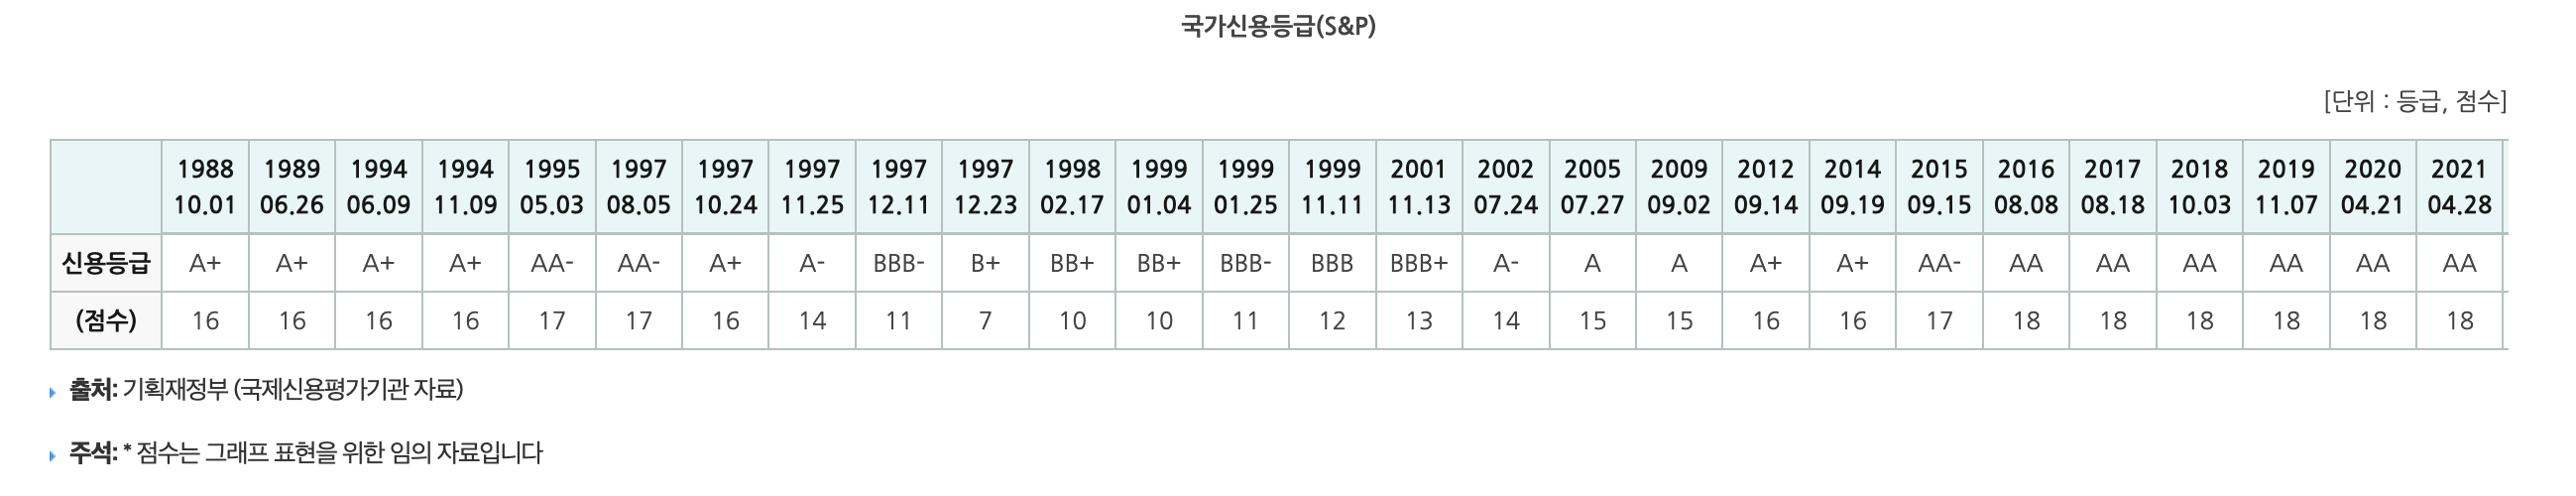 한국국가신용등급